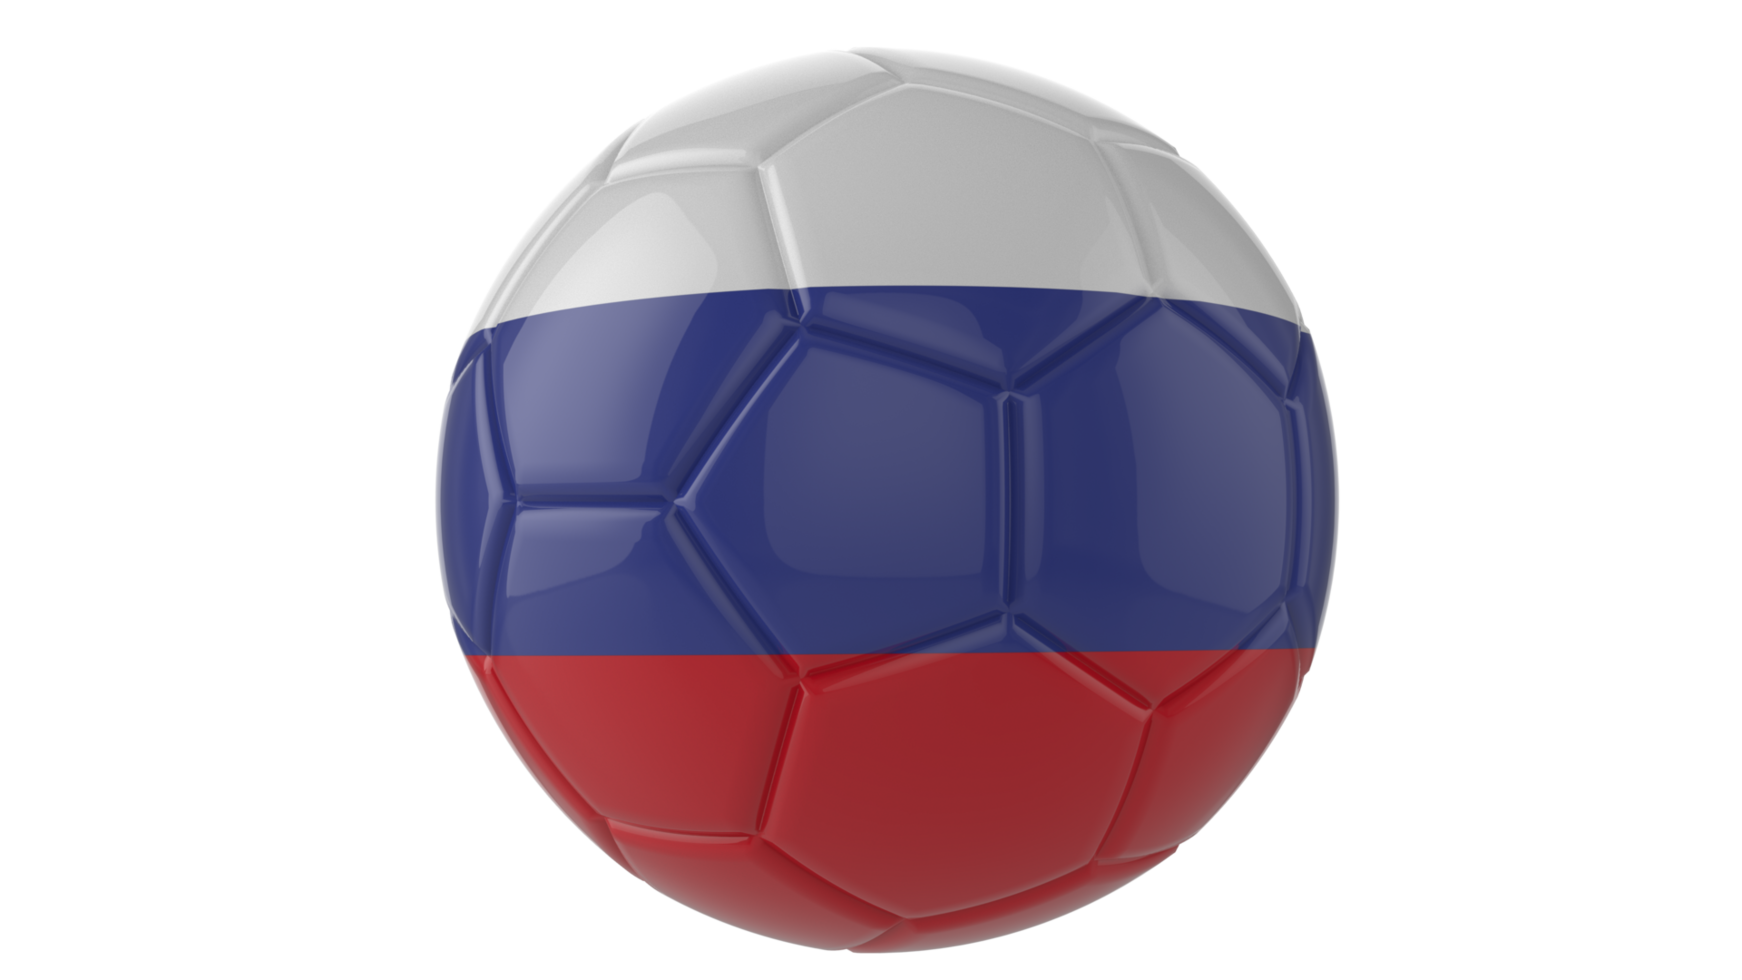 Balón de fútbol realista en 3d con la bandera de rusia aislado en un fondo png transparente